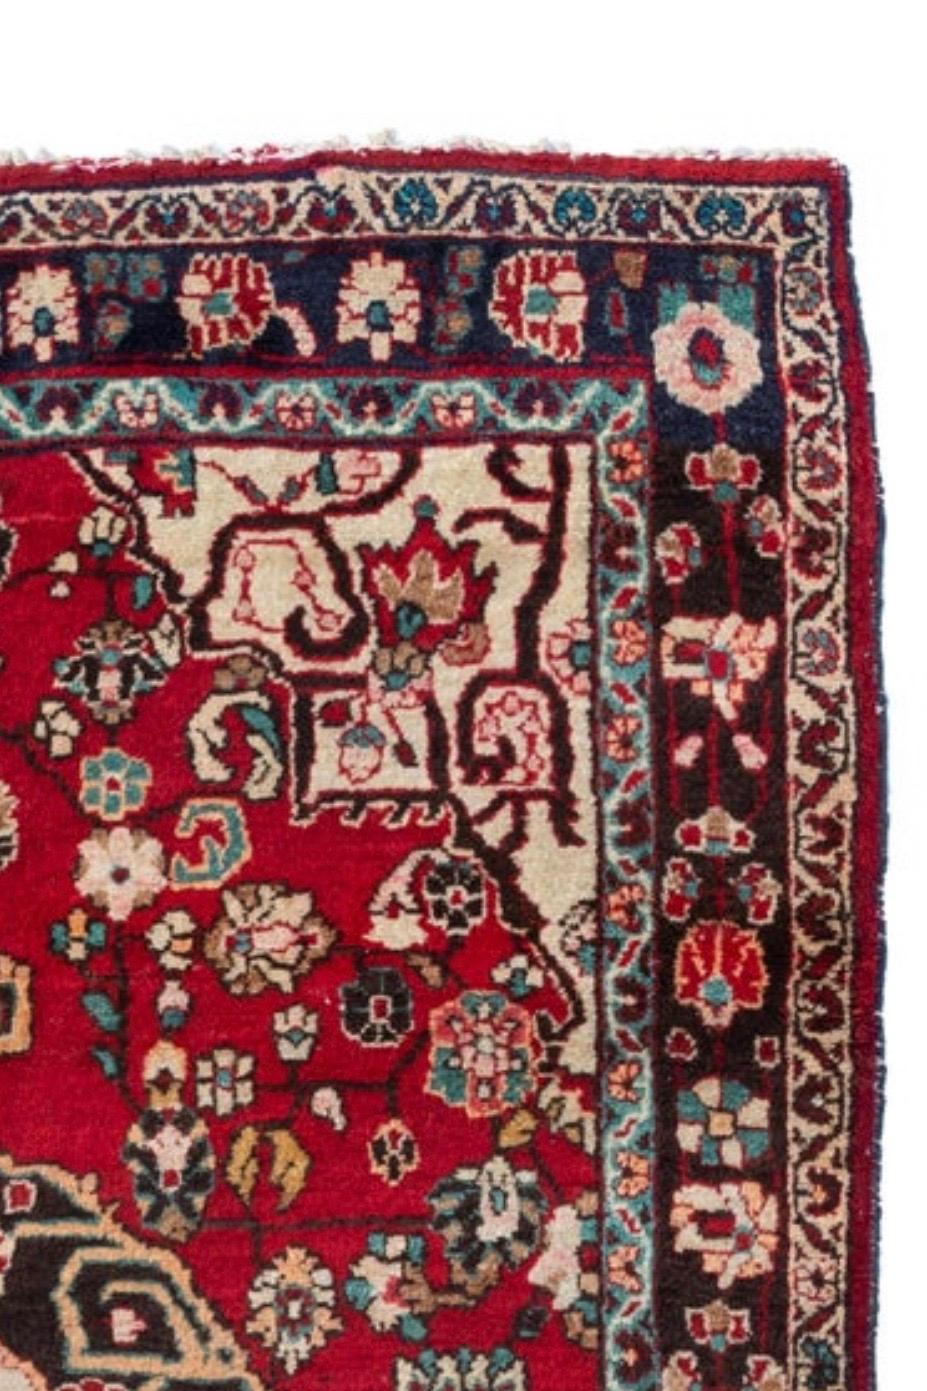 Sarouk est un petit village et ses villages voisins dans le nord-ouest de l'Iran. La plupart des tapis sarouks présentent un motif très particulier, qui repose sur des gerbes et des bouquets de fleurs. 

Il s'agit d'un joli tapis sarouk vintage